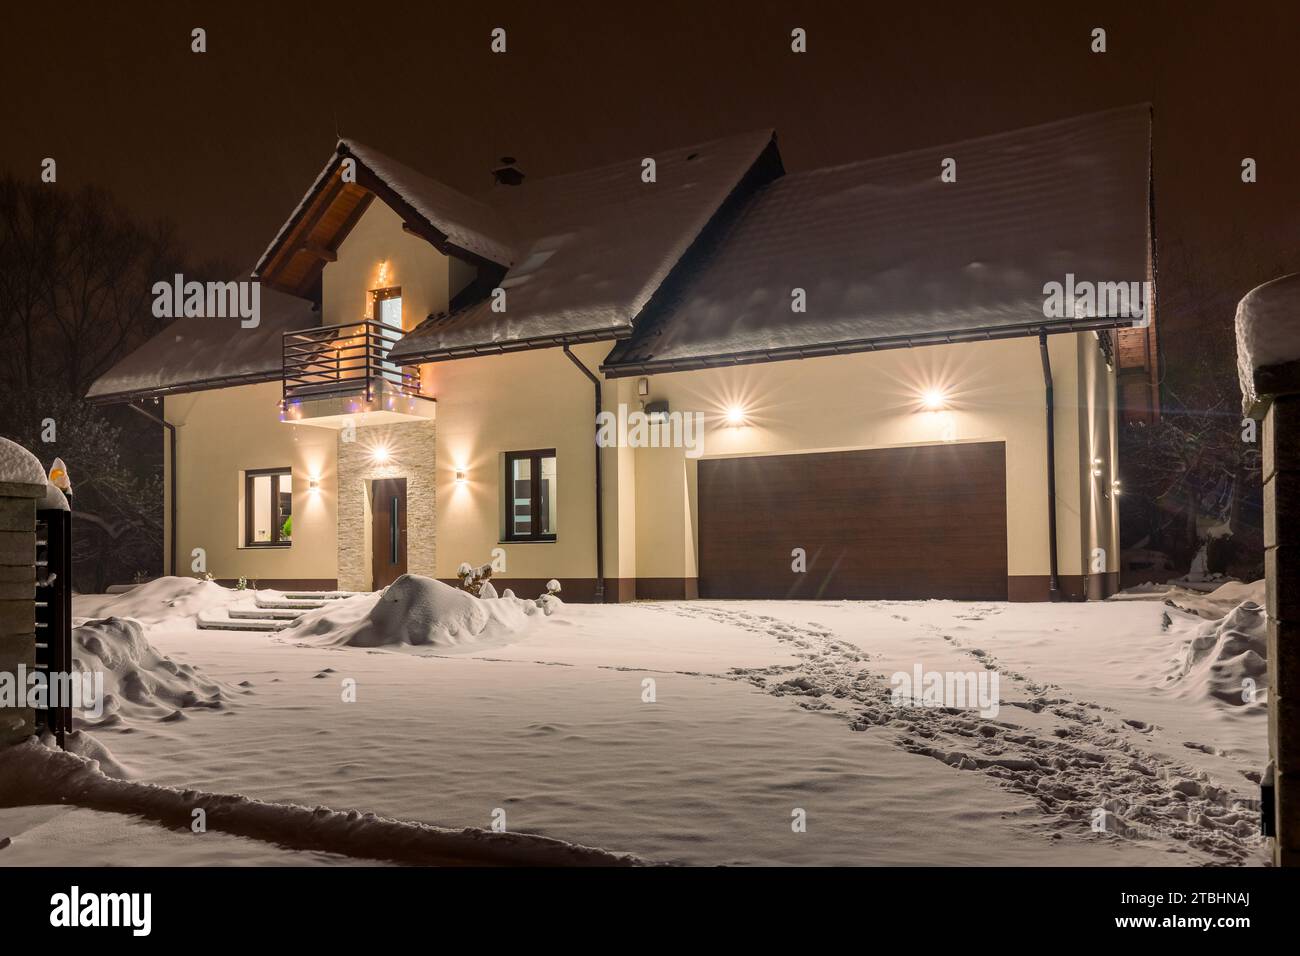 Einfamilienhaus mit Garage in Winterlandschaft bei Nacht Stockfoto